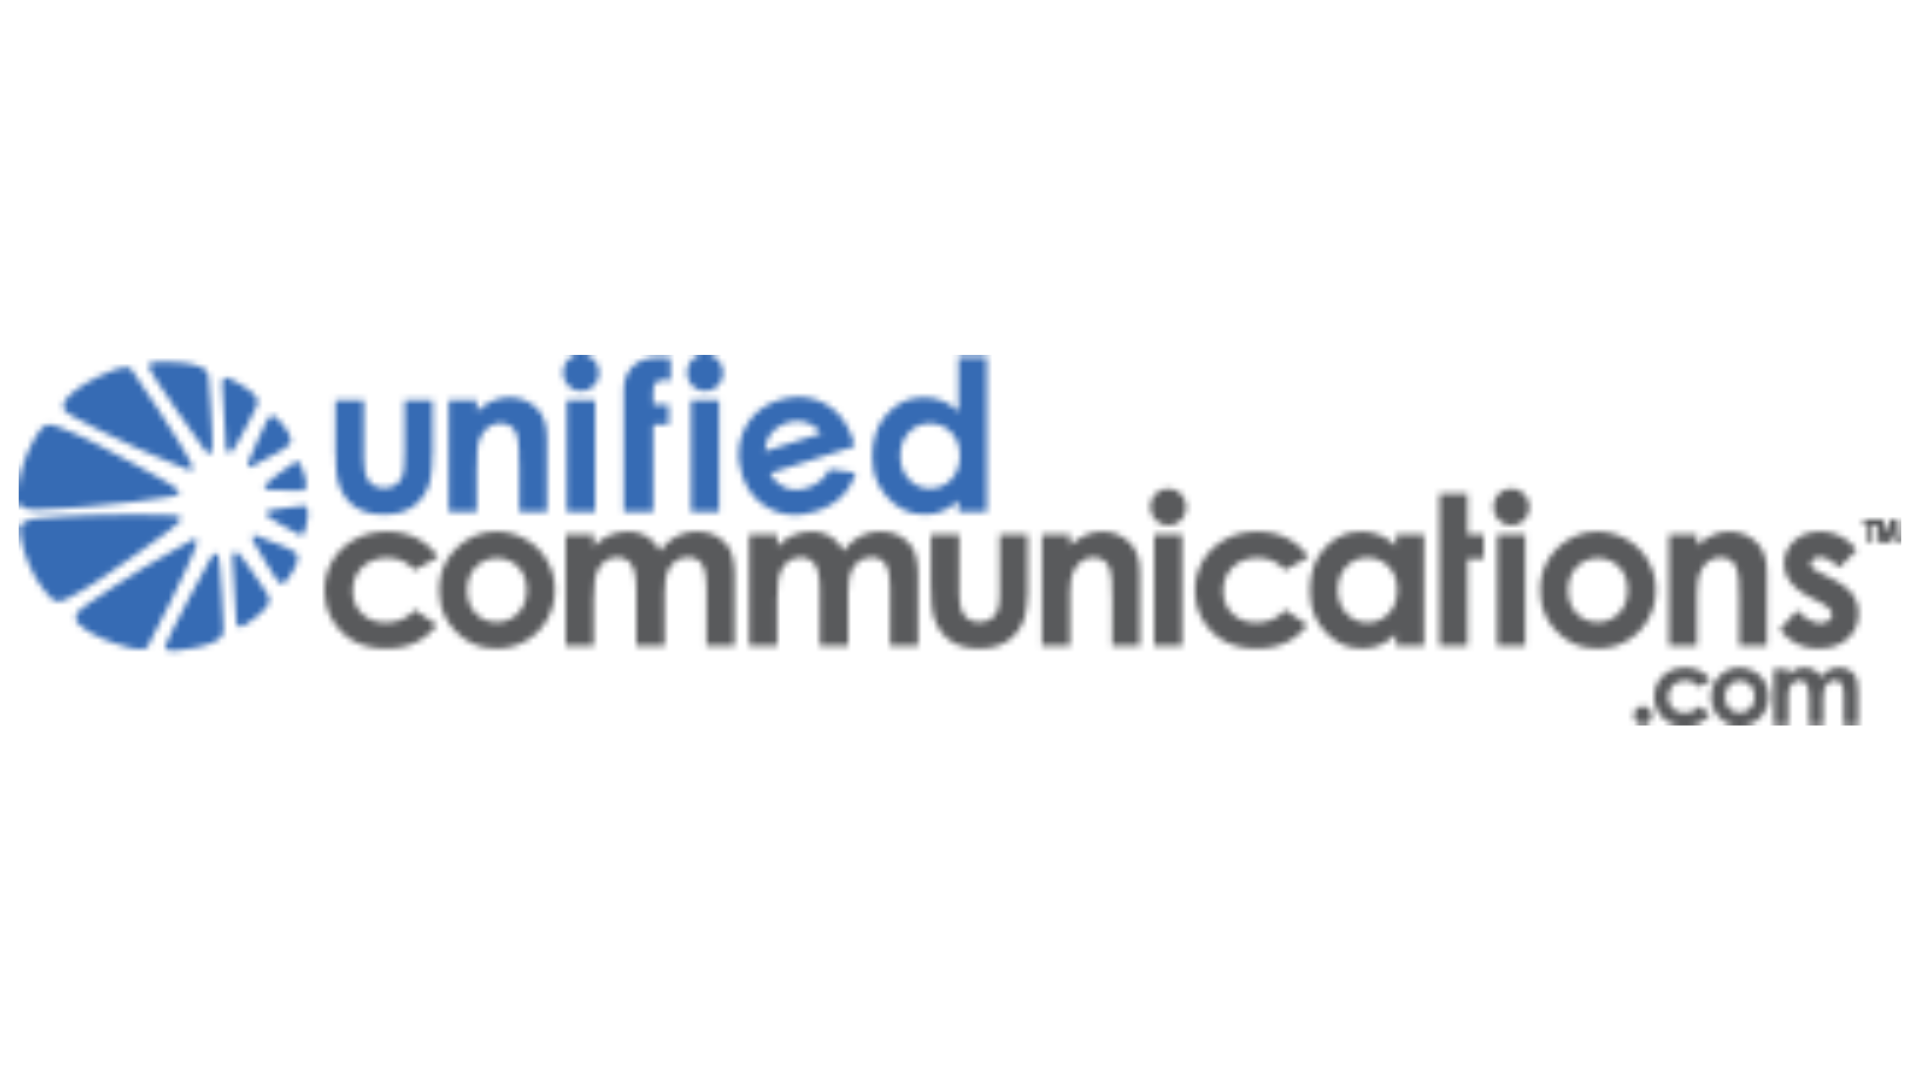 unifiedcommunications